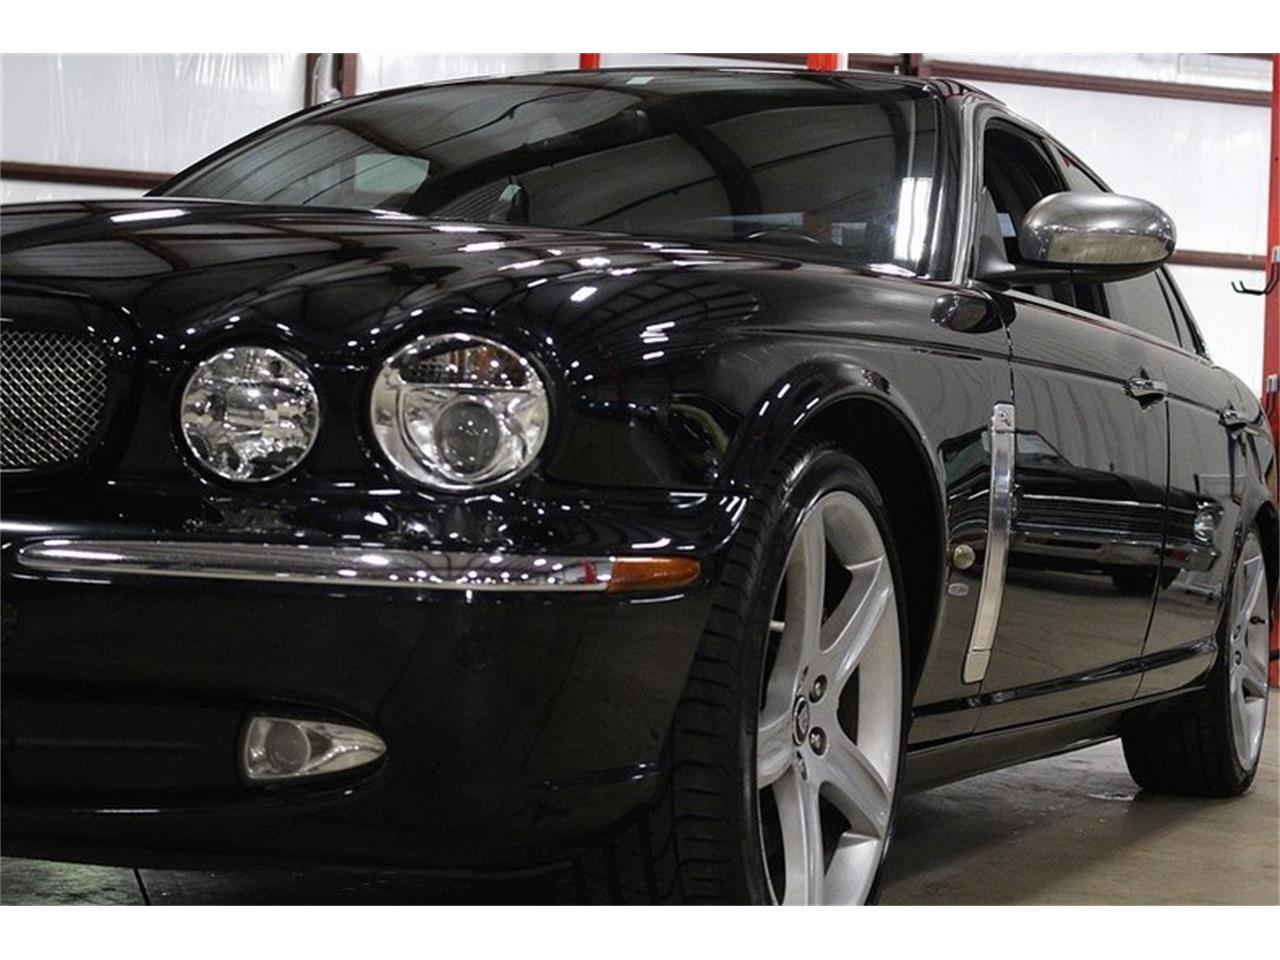 2007 Jaguar XJR for Sale | ClassicCars.com | CC-1008595